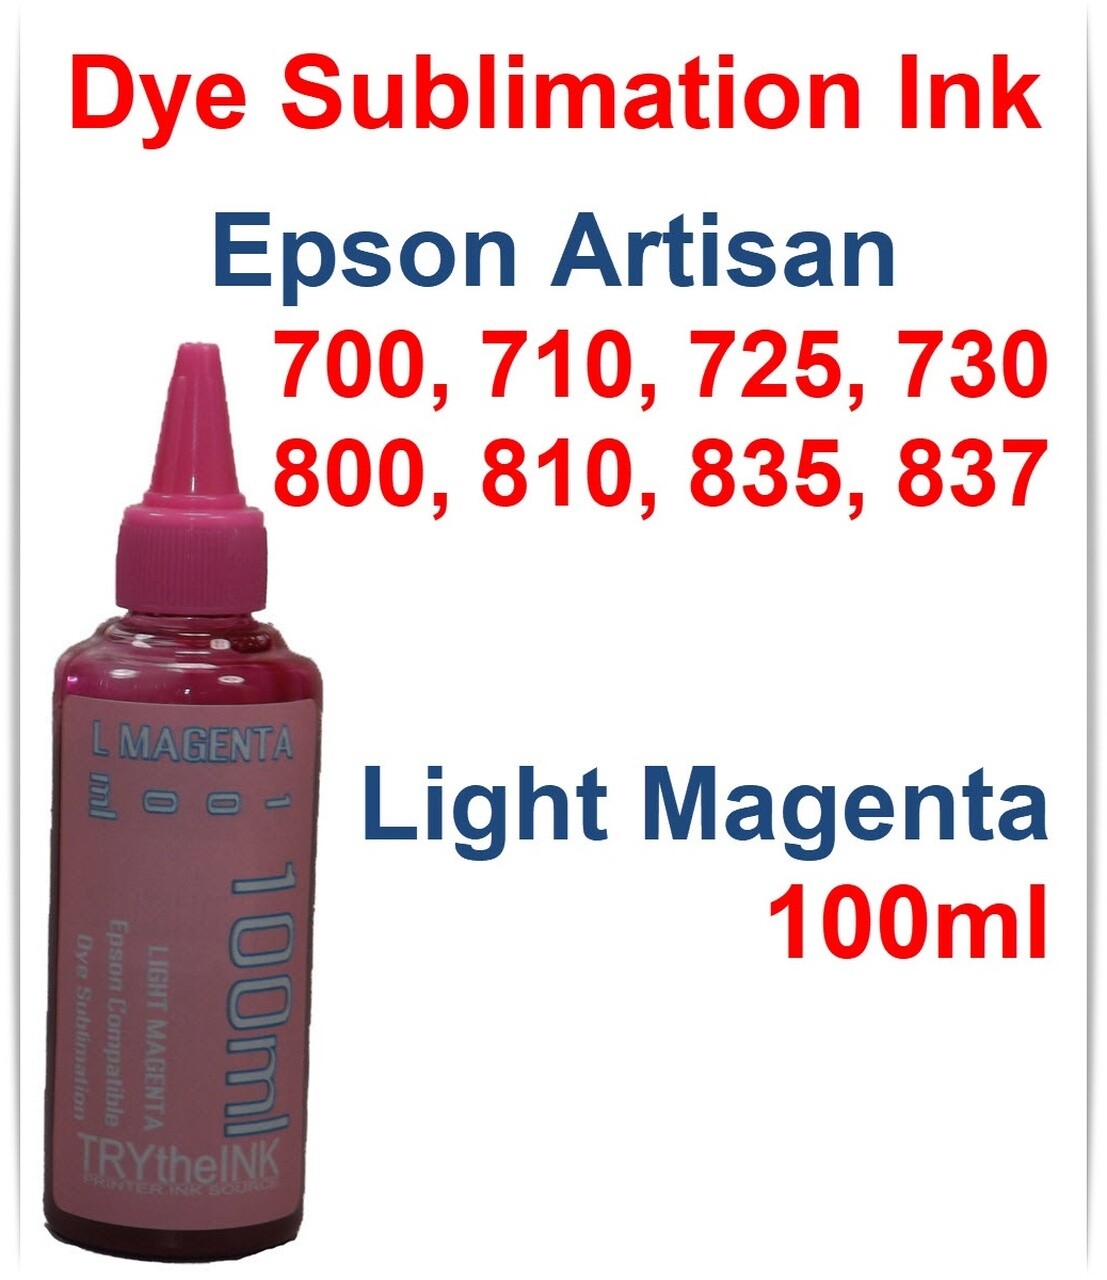 Light Magenta Dye Sublimation Ink 100ml for Epson Artisan 700 710 725 730 800 810 835 837